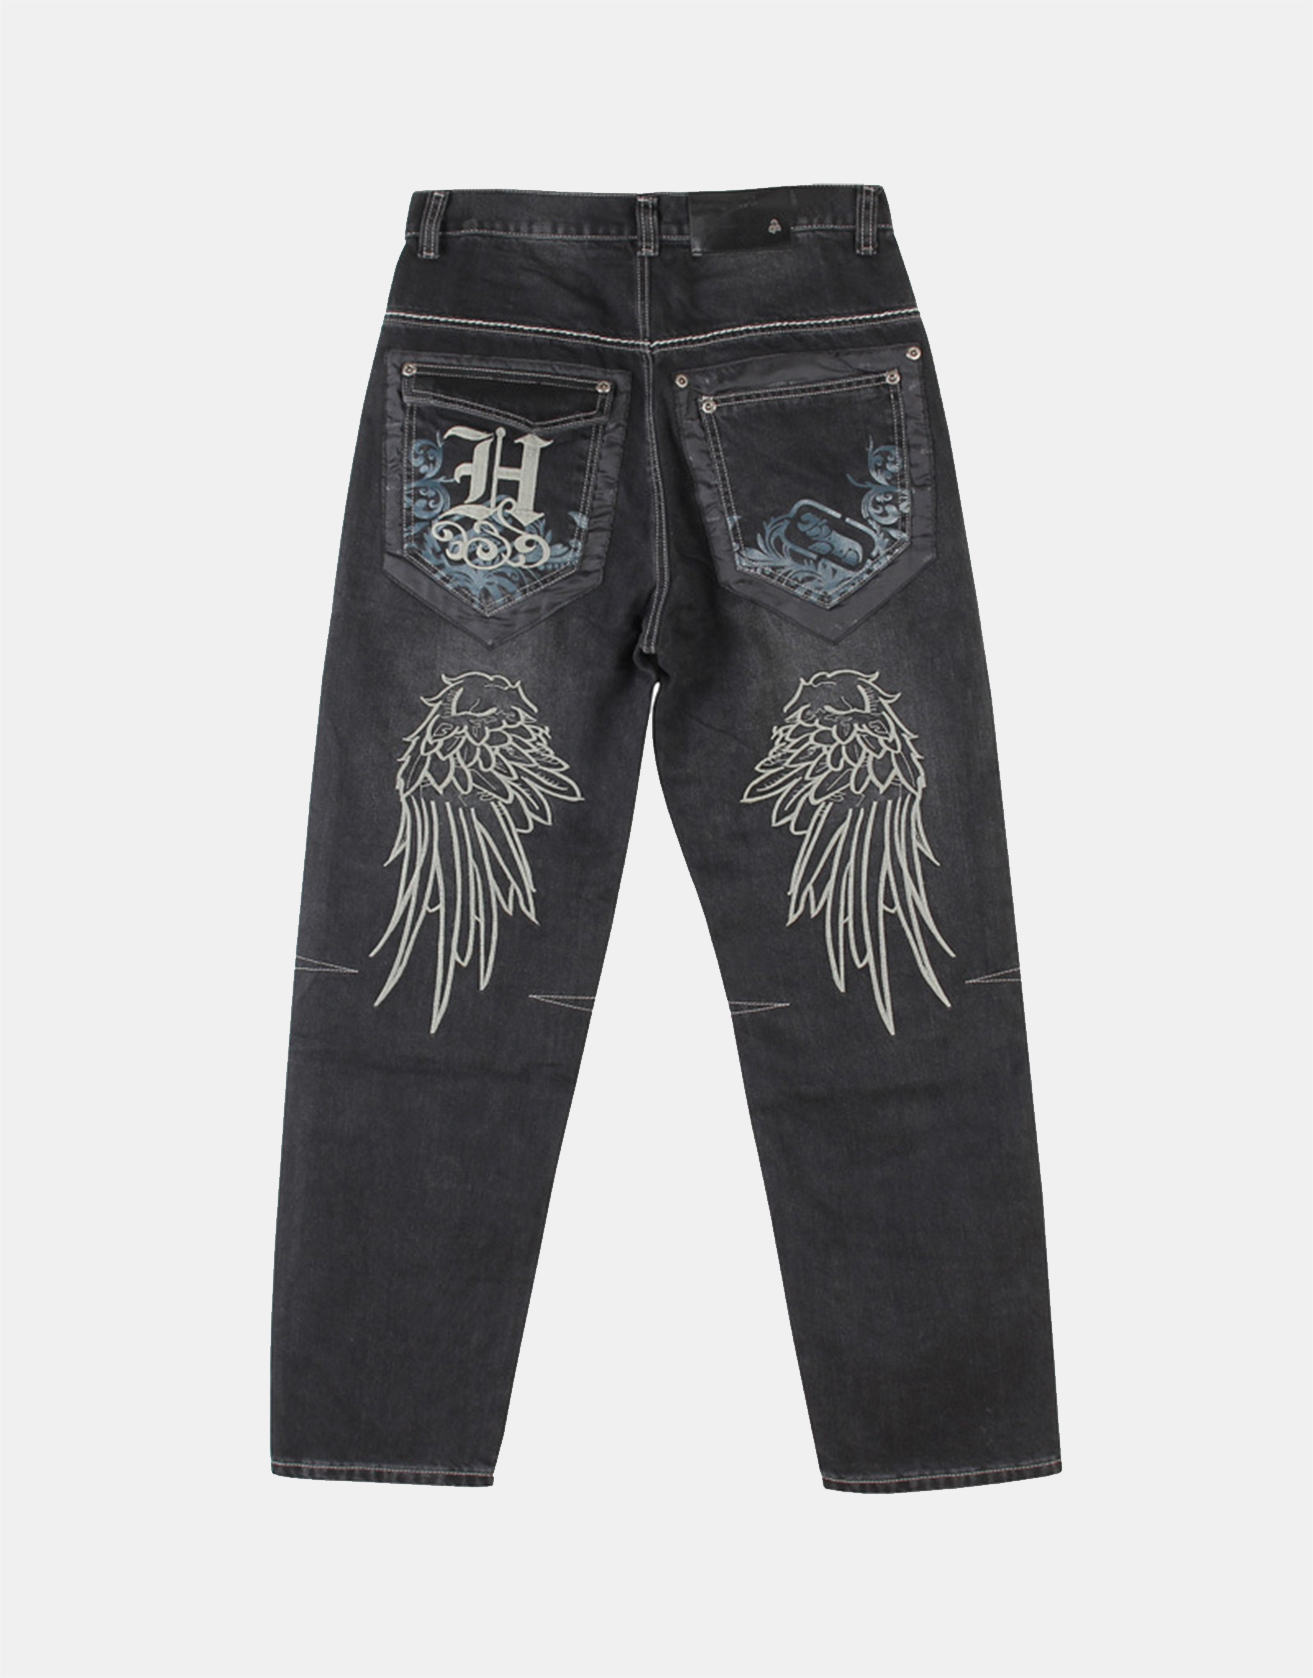 Loose Street Trendy Letter Embroidered Jeans / TECHWEAR CLUB / Techwear